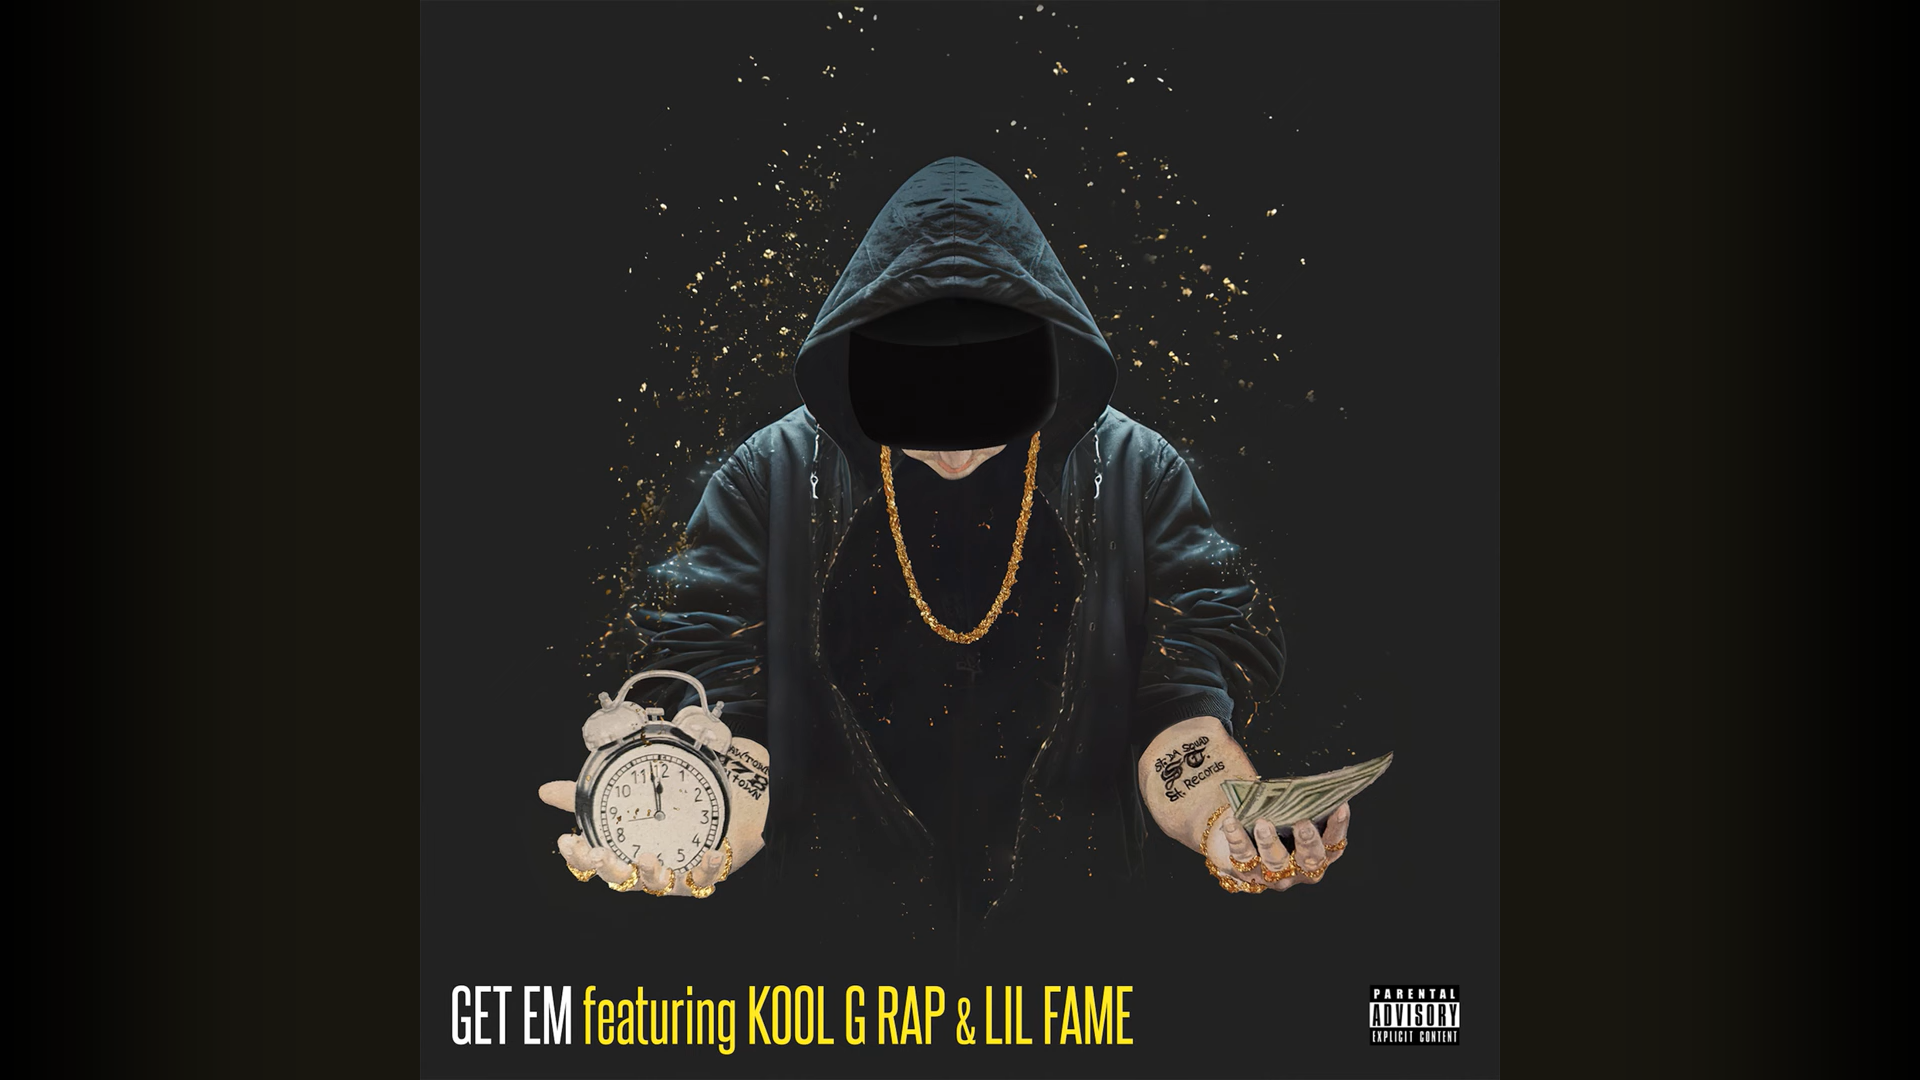 Termanology x Kool G Rap x Lil Fame – Get Em